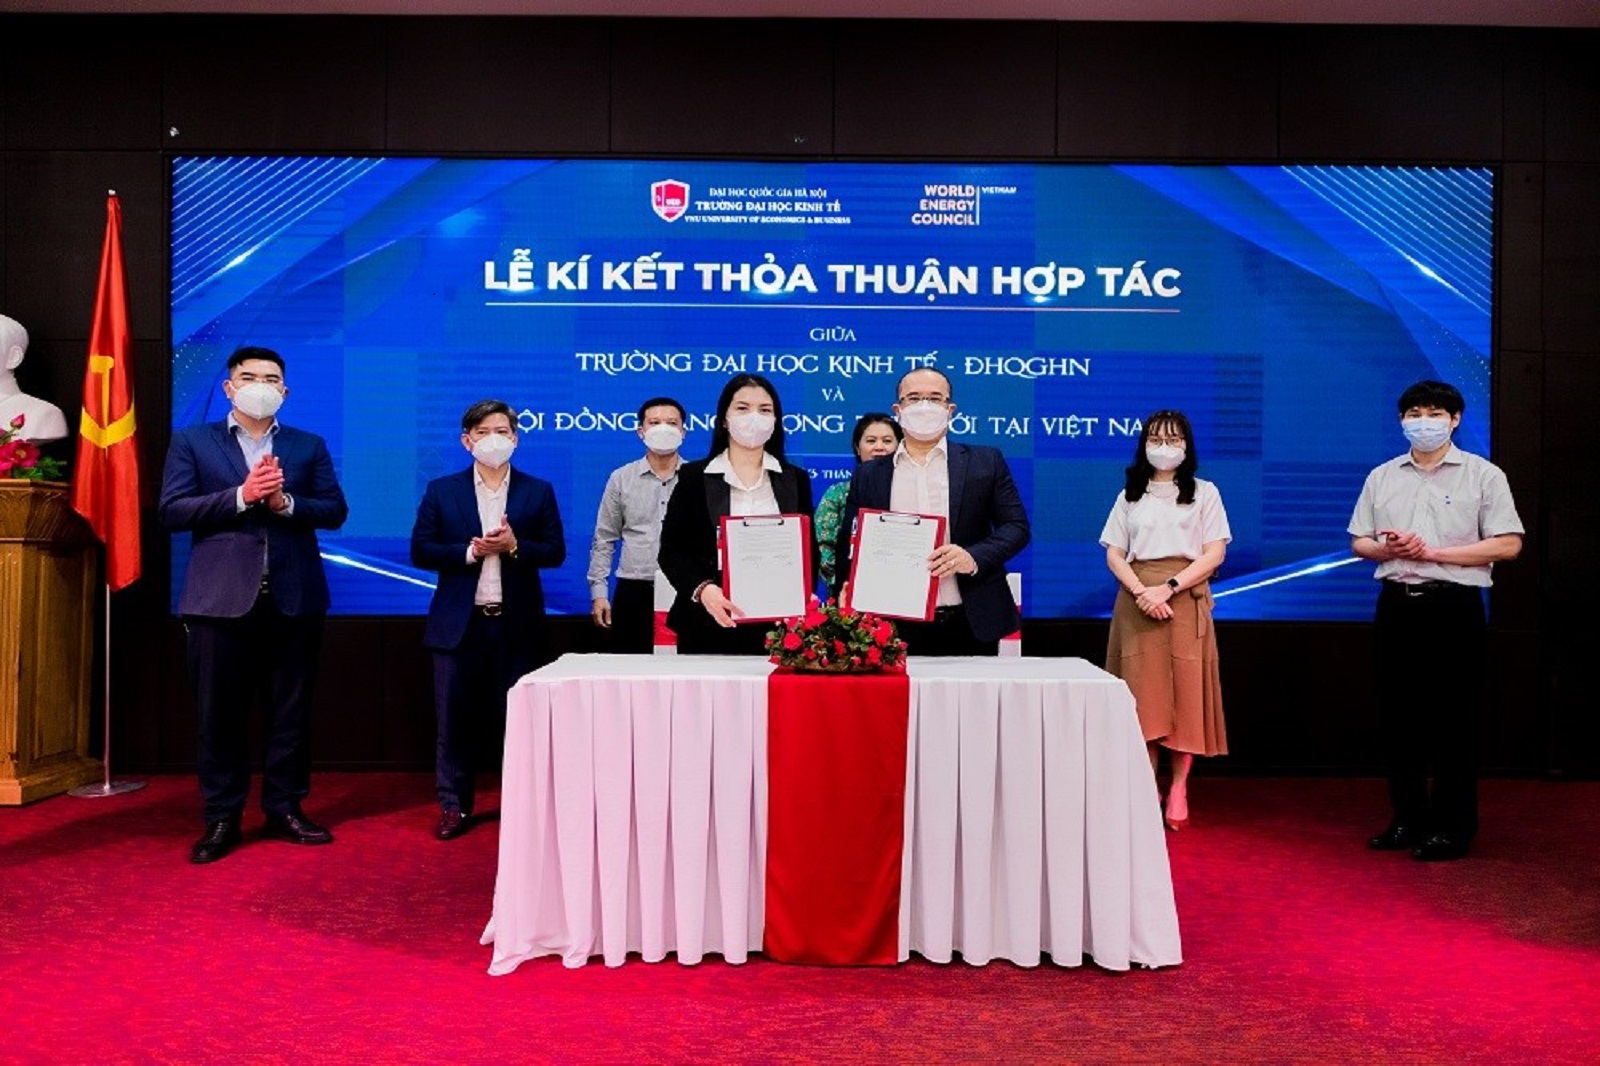 Lễ ký kết thỏa thuận hợp tác giữa Trường Đại học Kinh tế - ĐHQGHN và Hội đồng Năng lượng thế giới tại Việt Nam